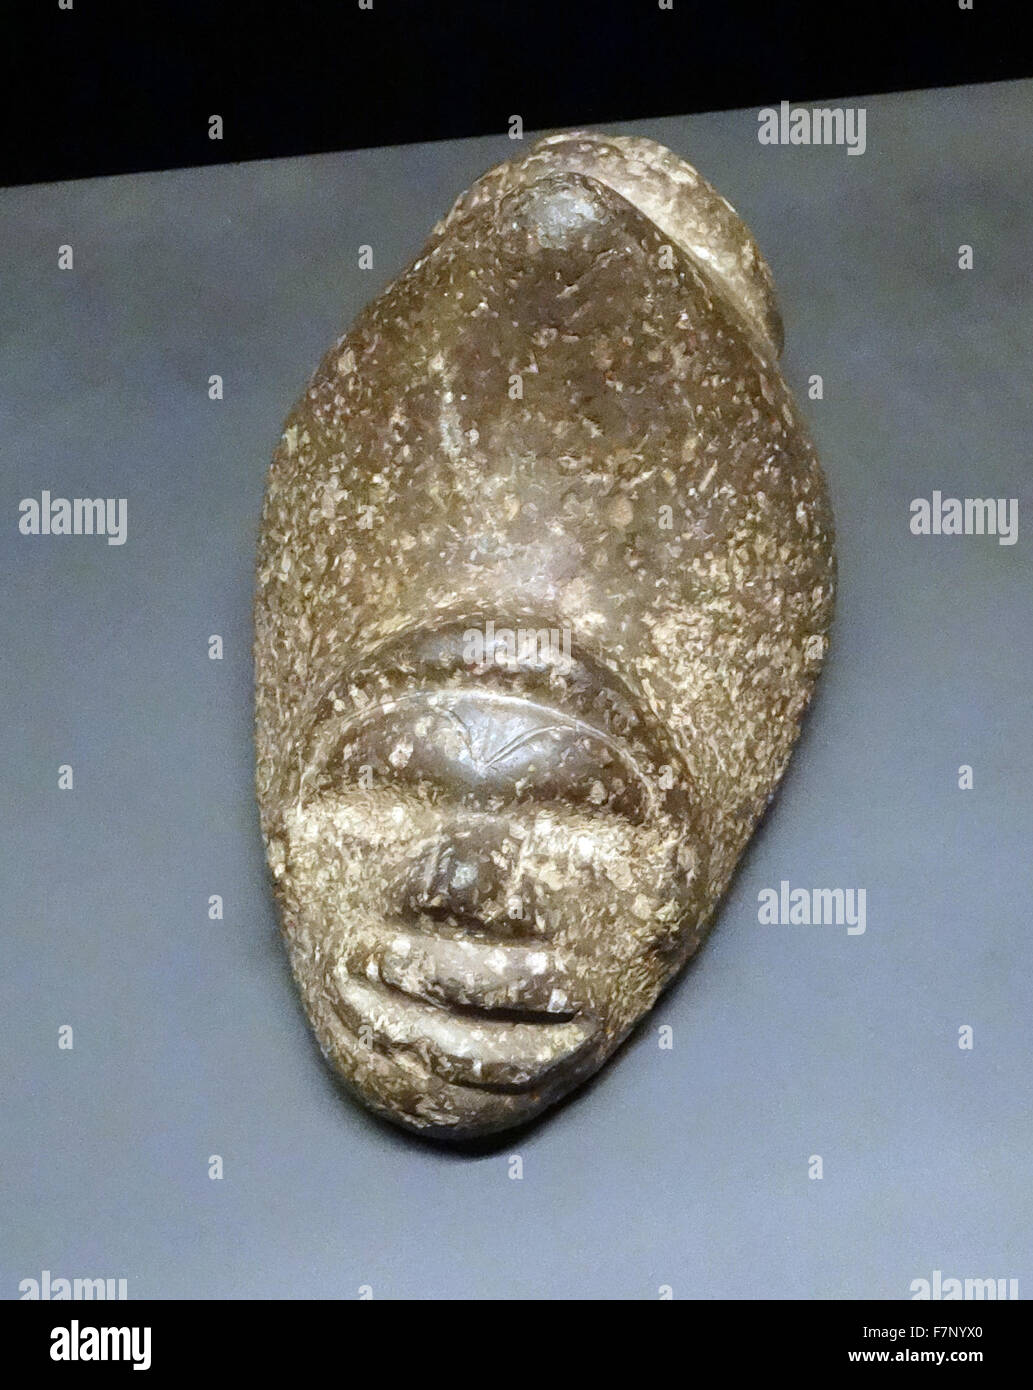 Señaló piedra de la cultura Taína. Creado por los arawak, los pueblos indígenas del Caribe. Fecha del siglo XVI. Foto de stock